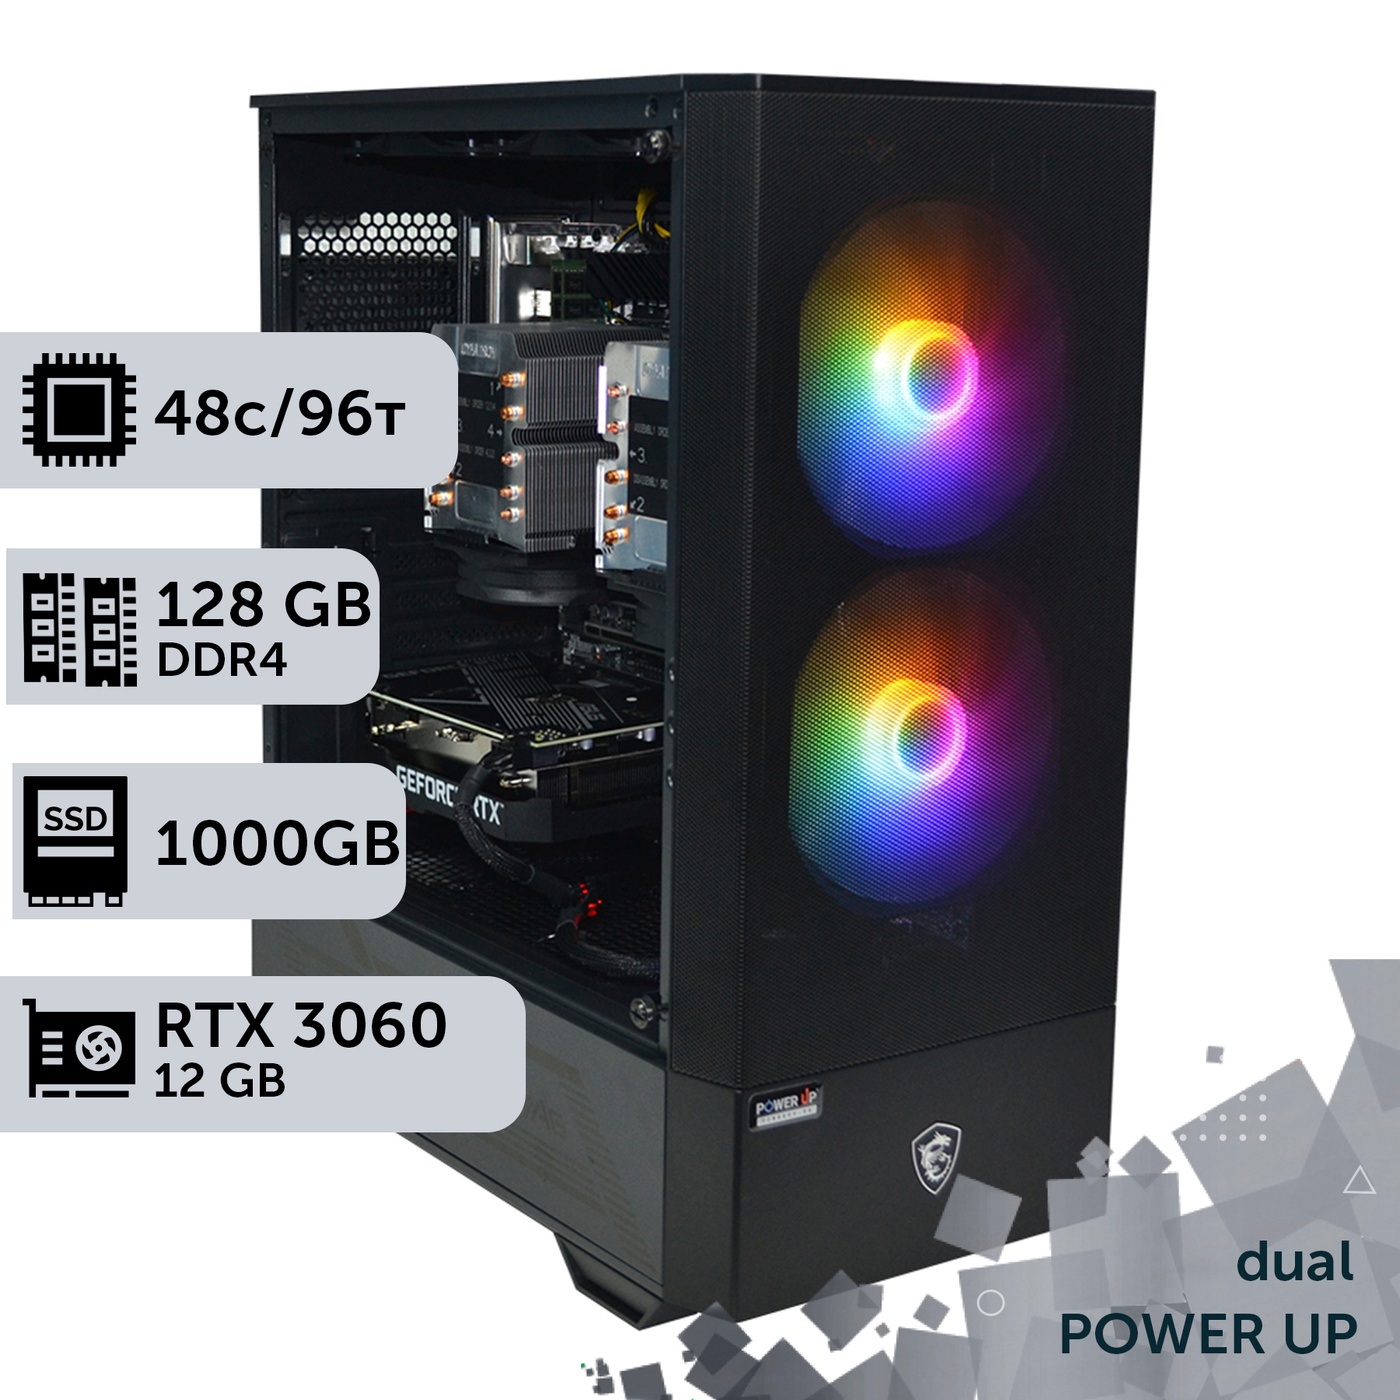 Двухпроцессорная рабочая станция PowerUp #360 Intel Xeon Platinum 8260es x2/128 GB/SSD 1TB/GeForce RTX 3060 12GB